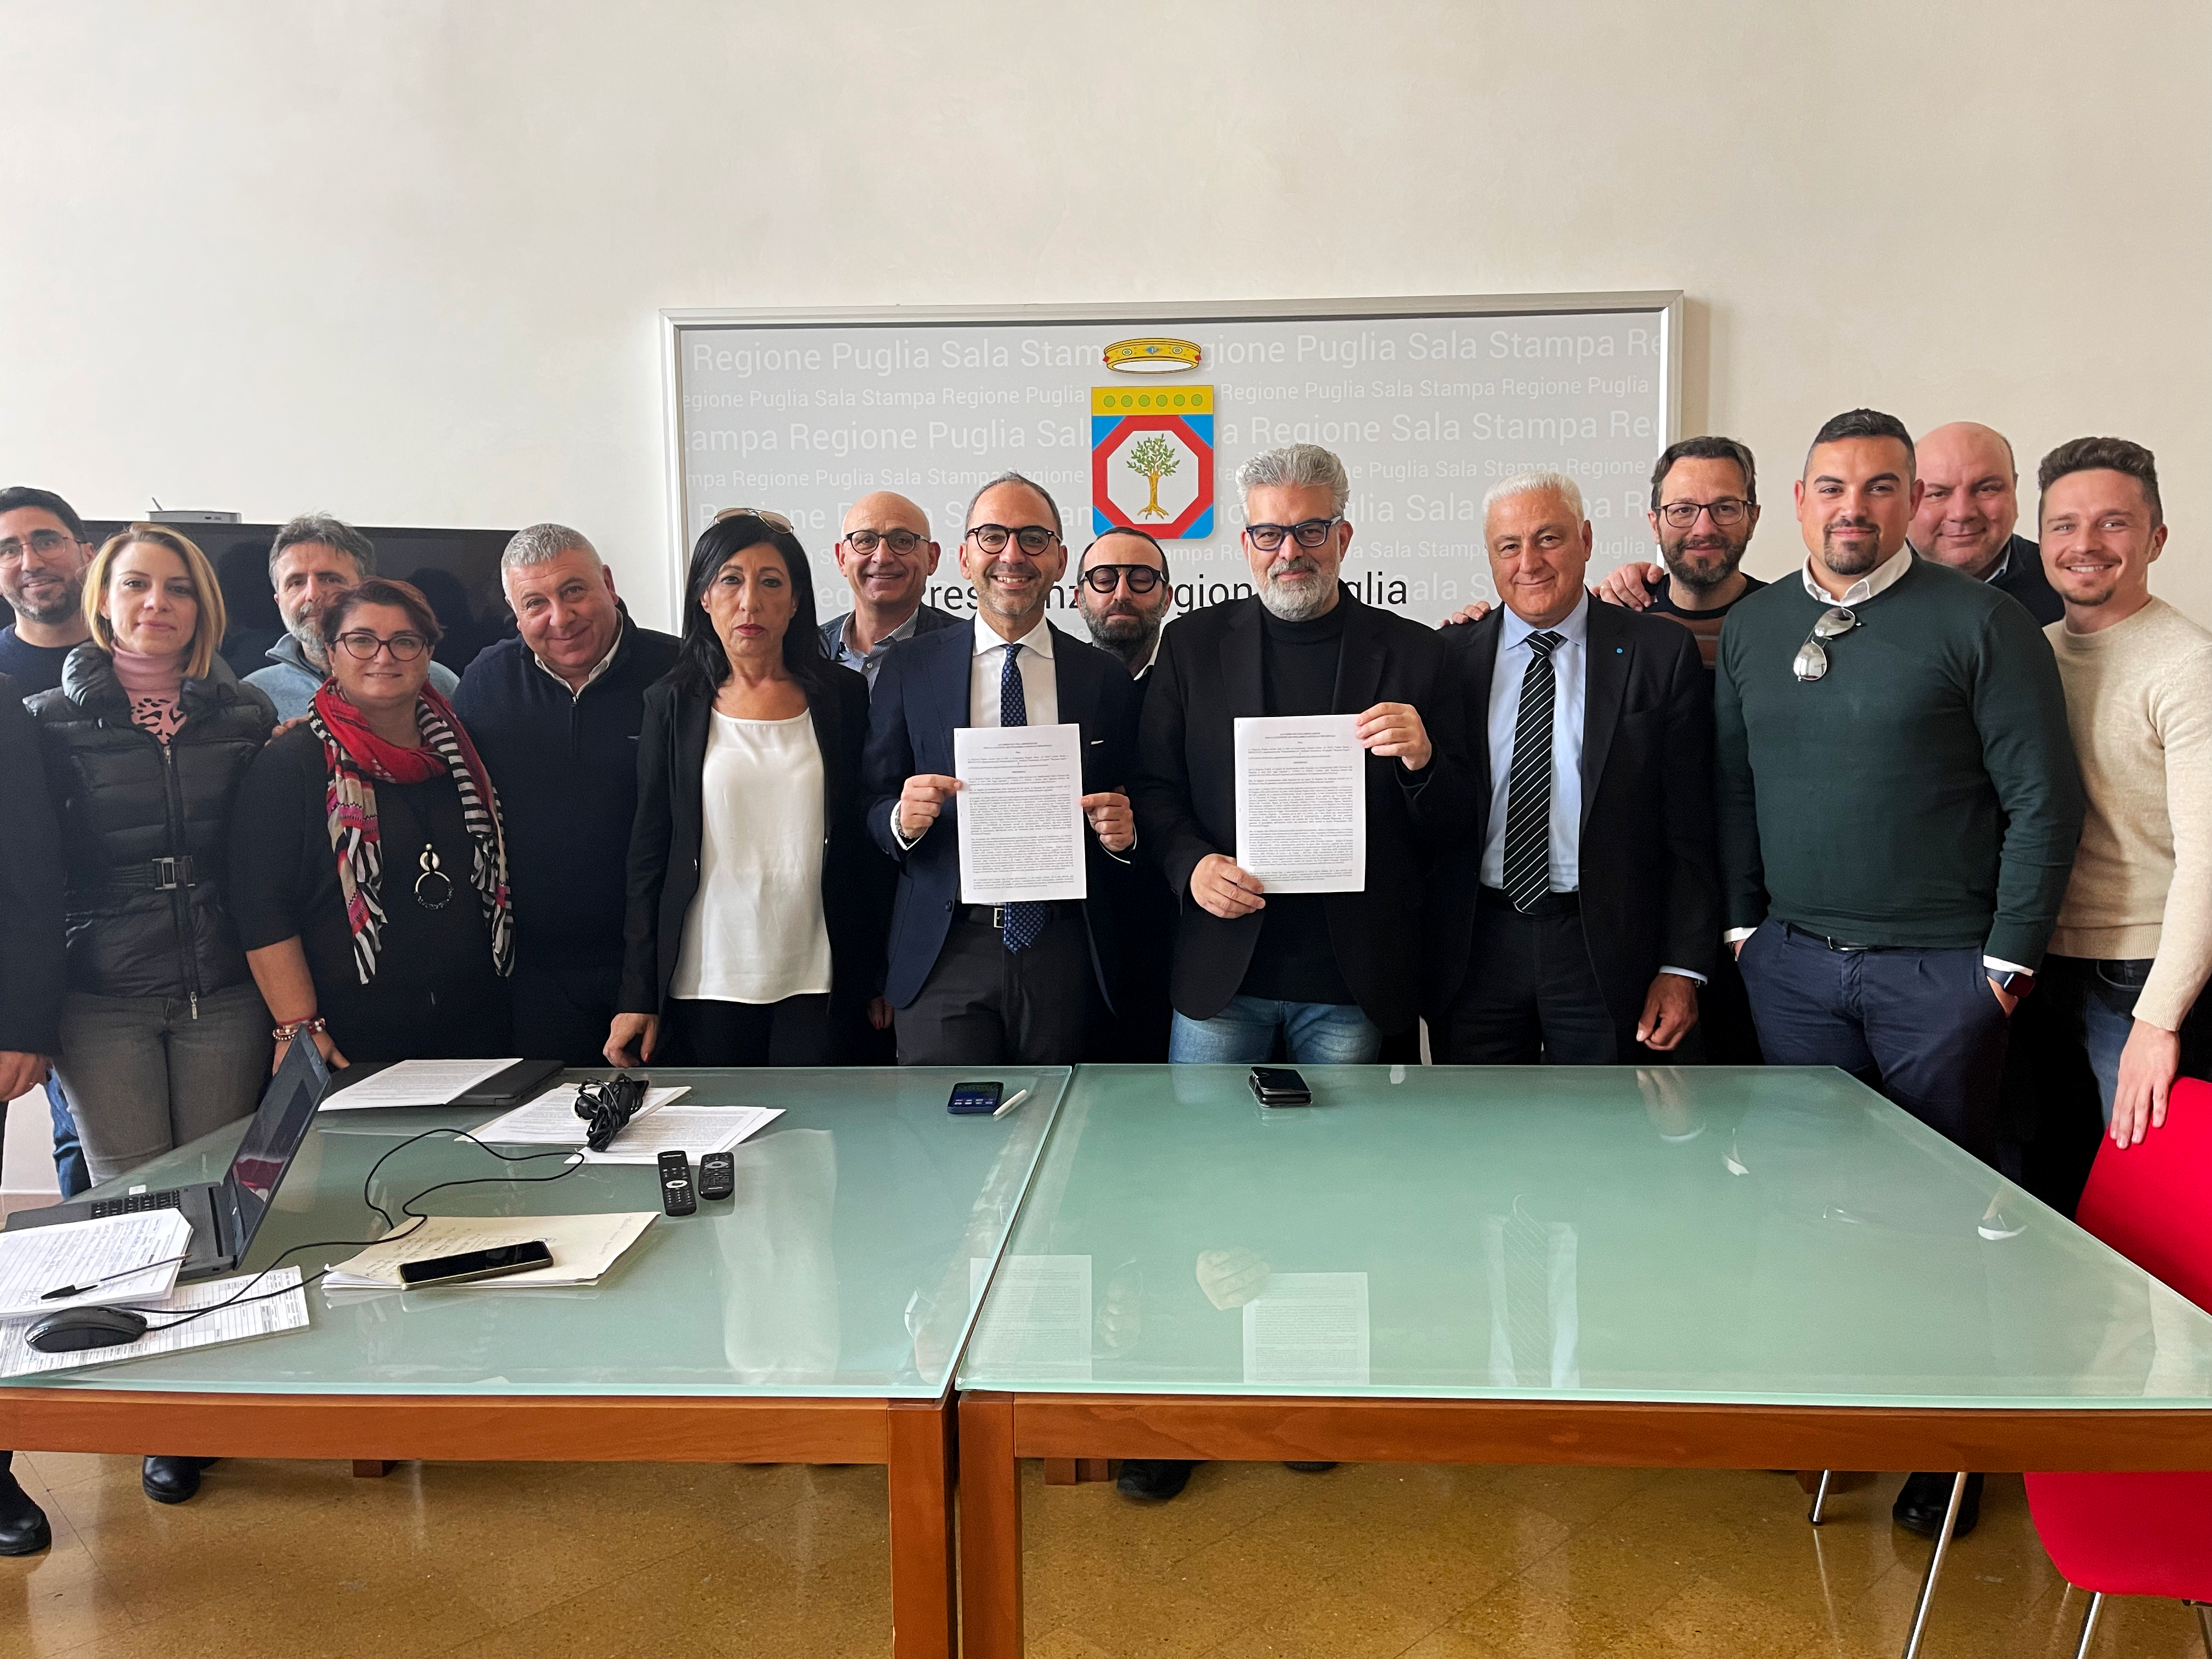 Galleria Piemontese, sottoscritta l’intesa per l’adeguamento contrattuale dei lavoratori della Santa Teresa SpA - Diapositiva 1 di 2